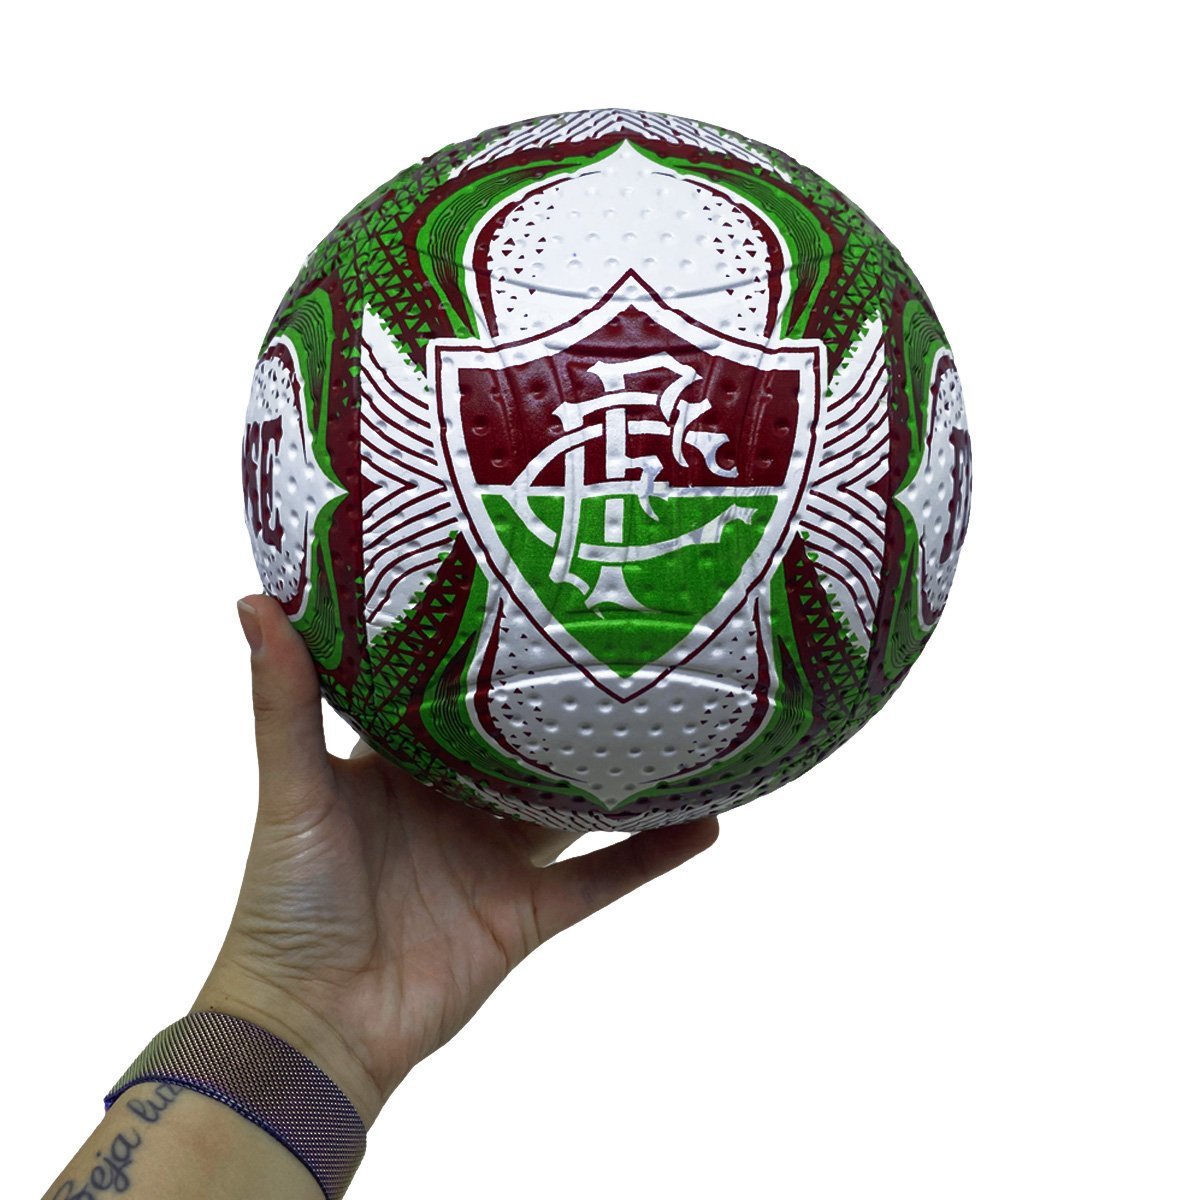 Bola De Futebol De Quadra: A Experiência De Jogo Mais Realista